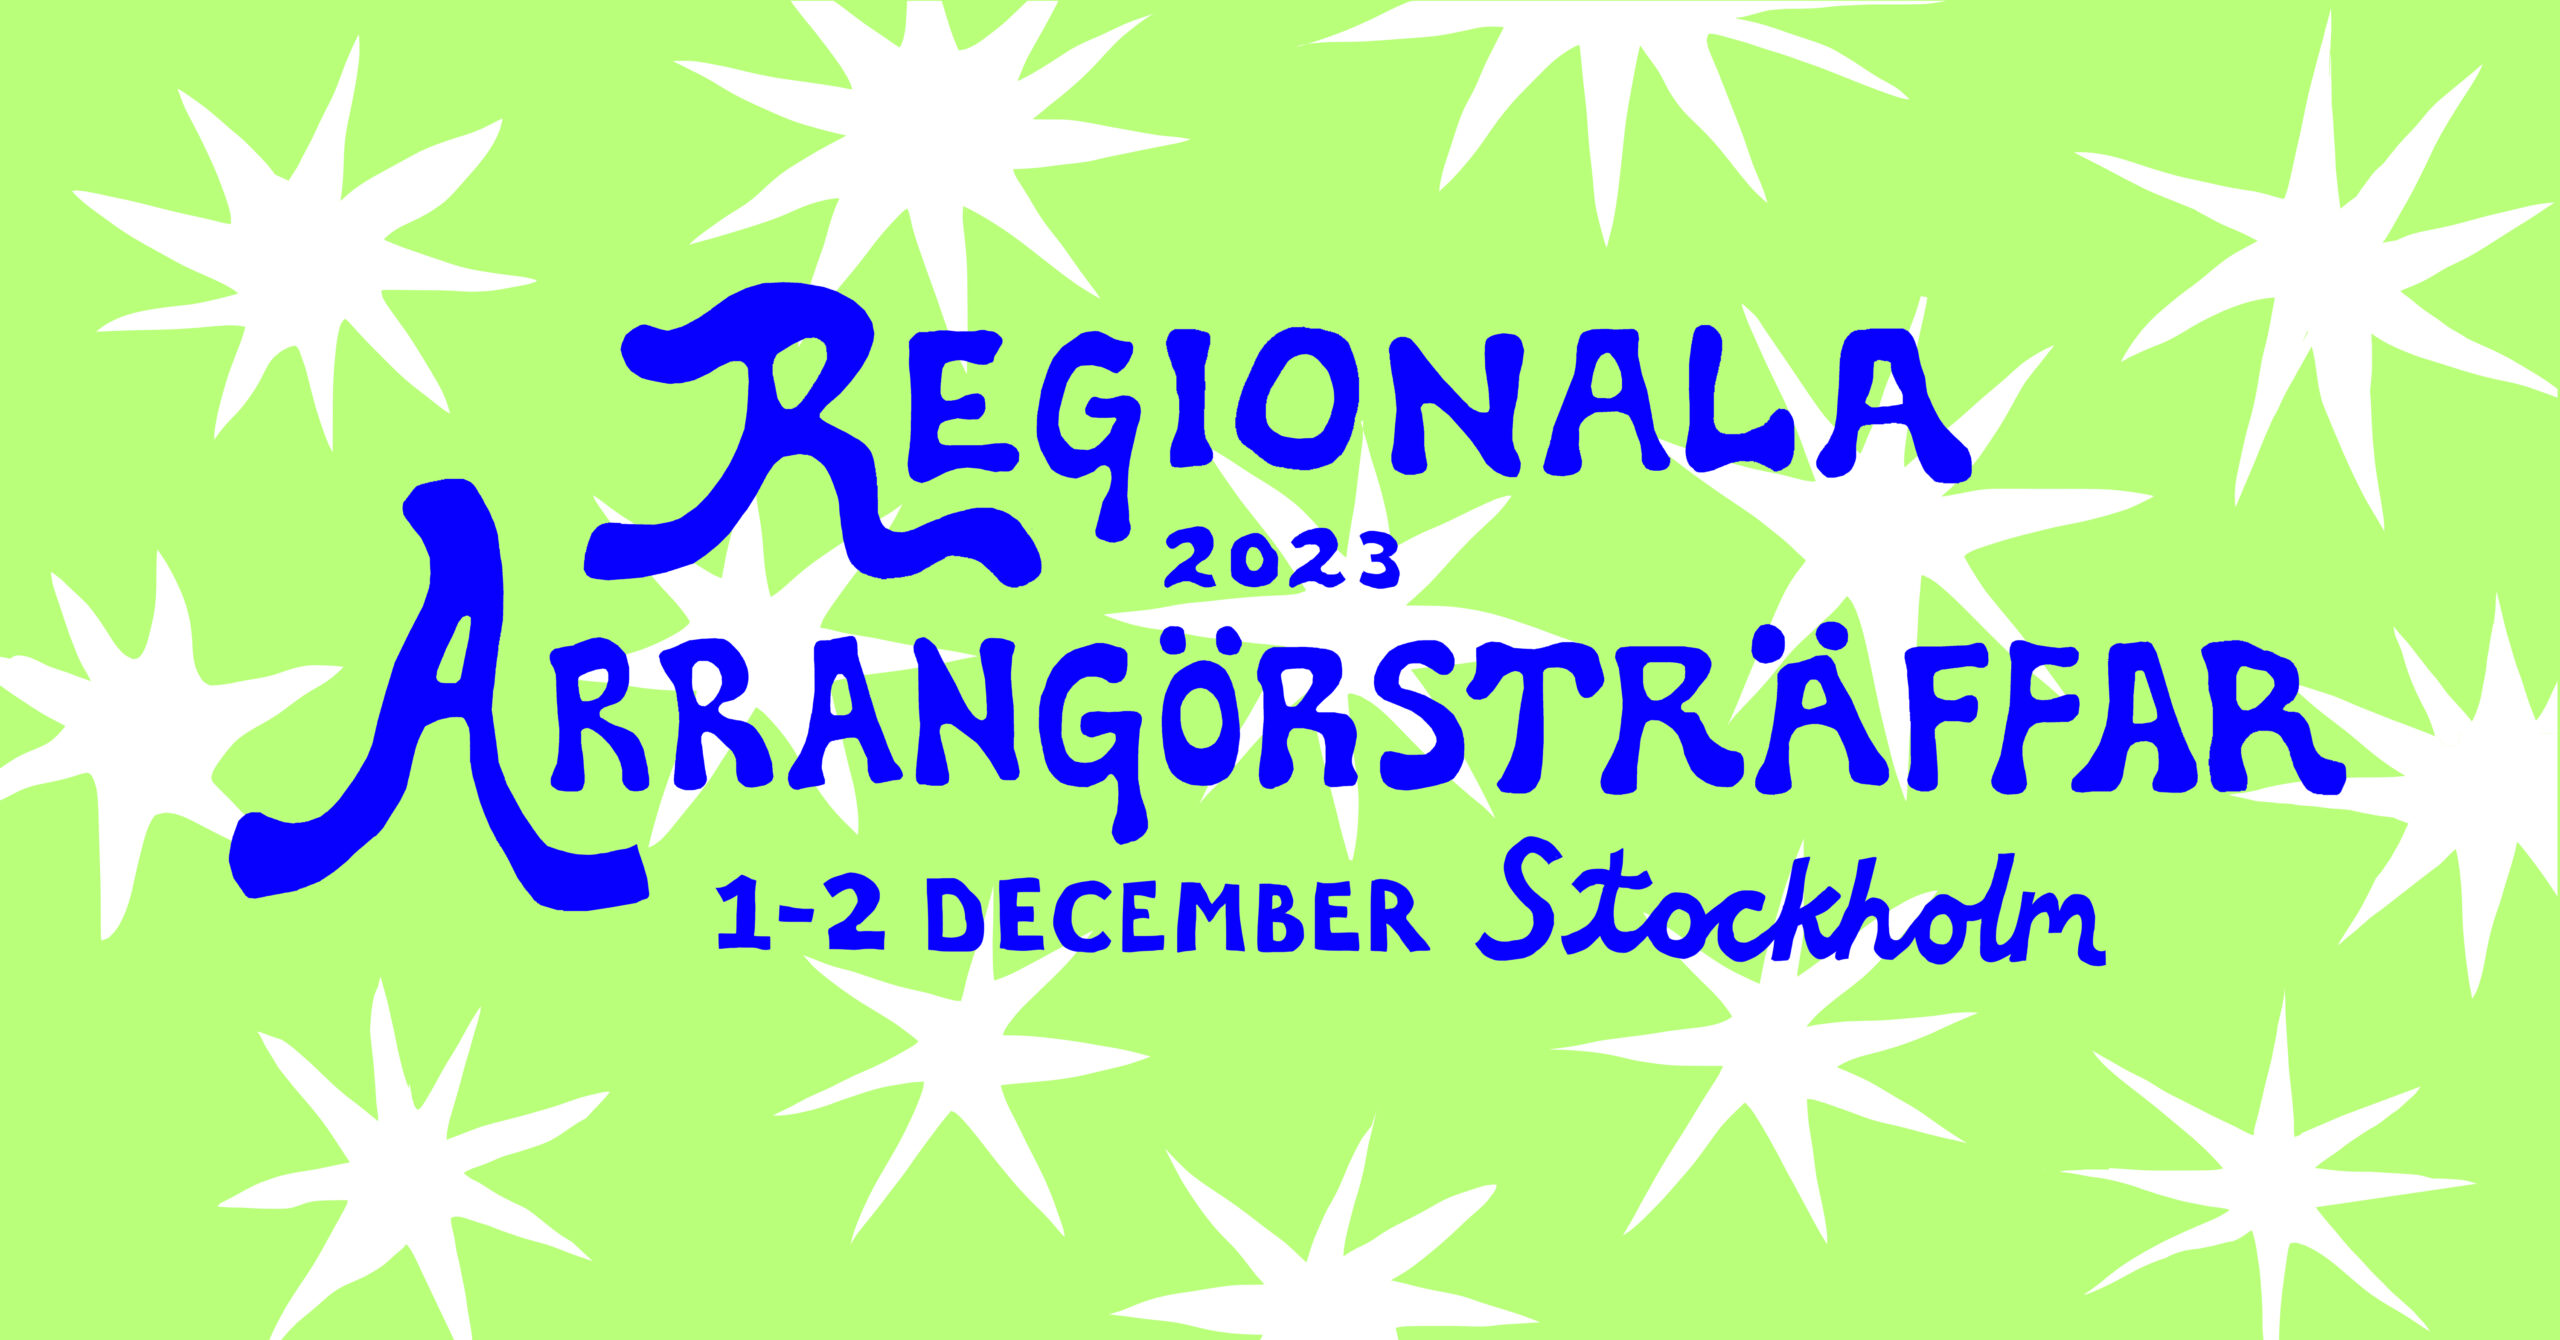 Regional Arrangörsträff i Stockholm 1-2 december